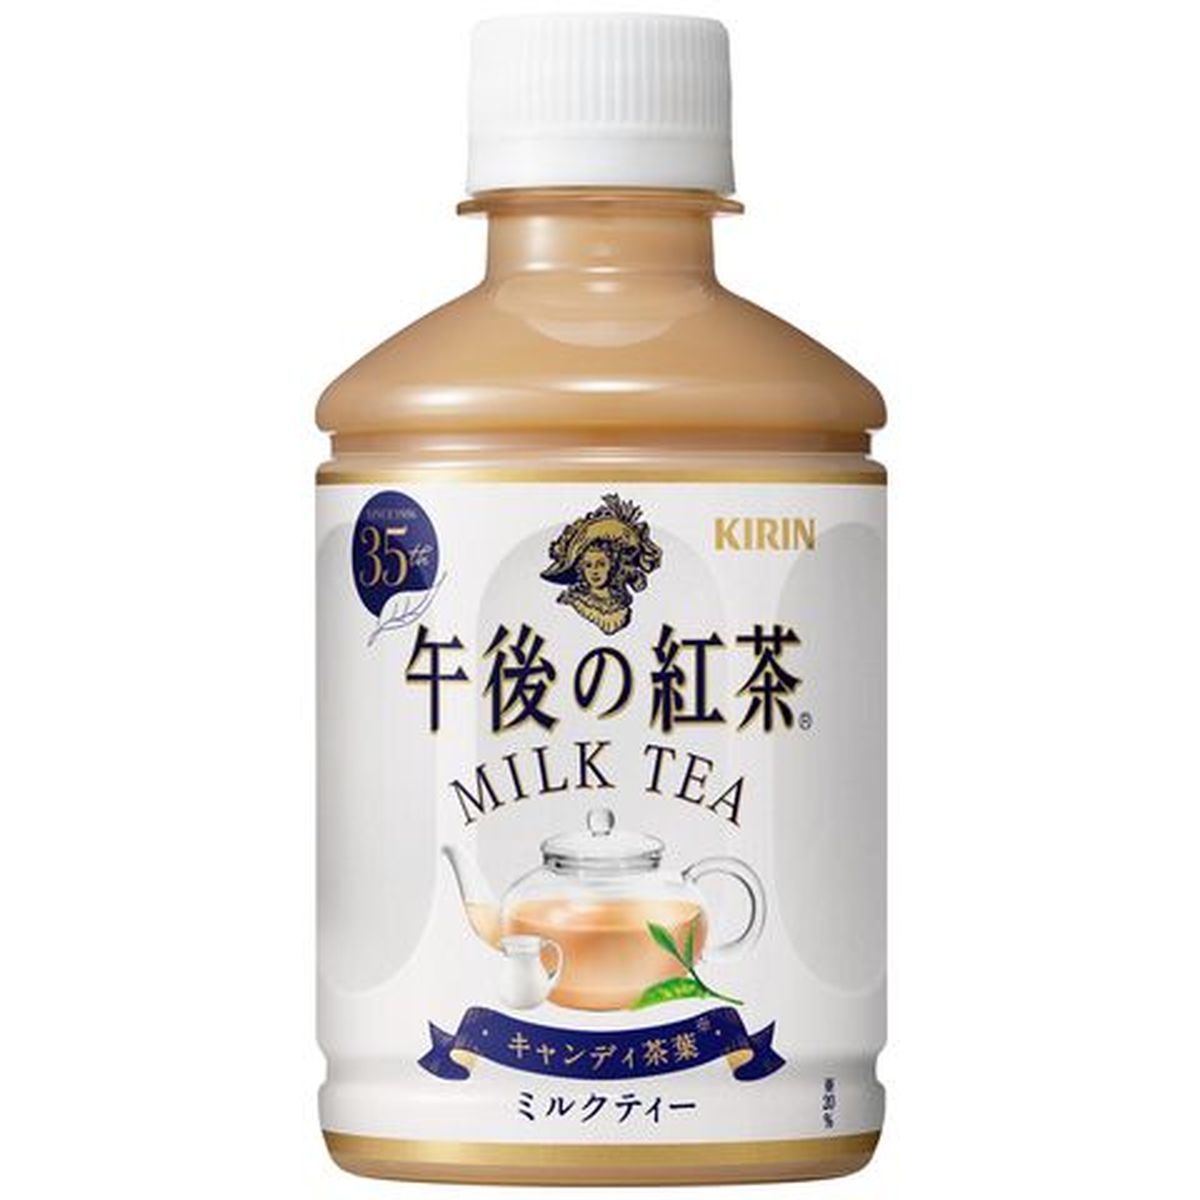 【24個入リ】キリン 午後ノ紅茶 ミルクティー ペット 280ml